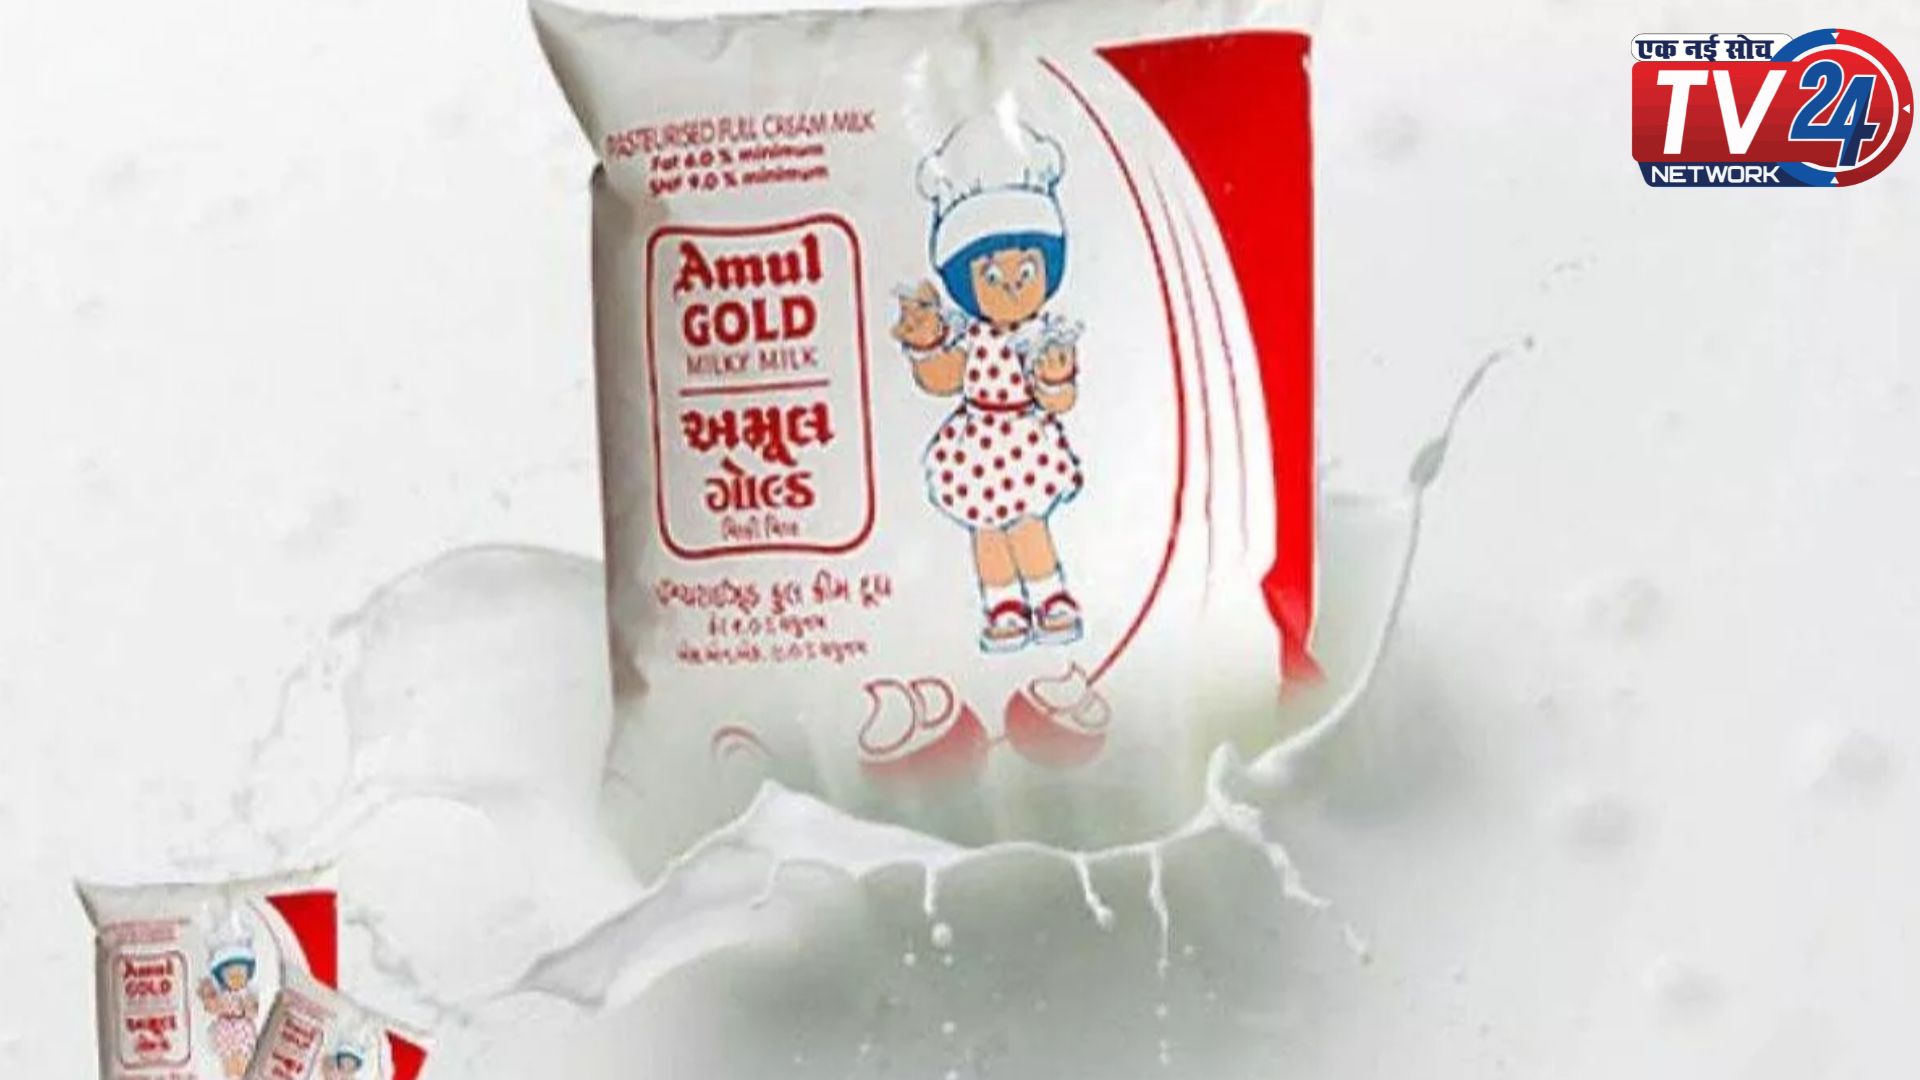 Amul Milk Price: देश भर में महंगा हुआ Amul दूध, जानें कितने रुपये प्रति लीटर की हुई बढ़ोतरी?